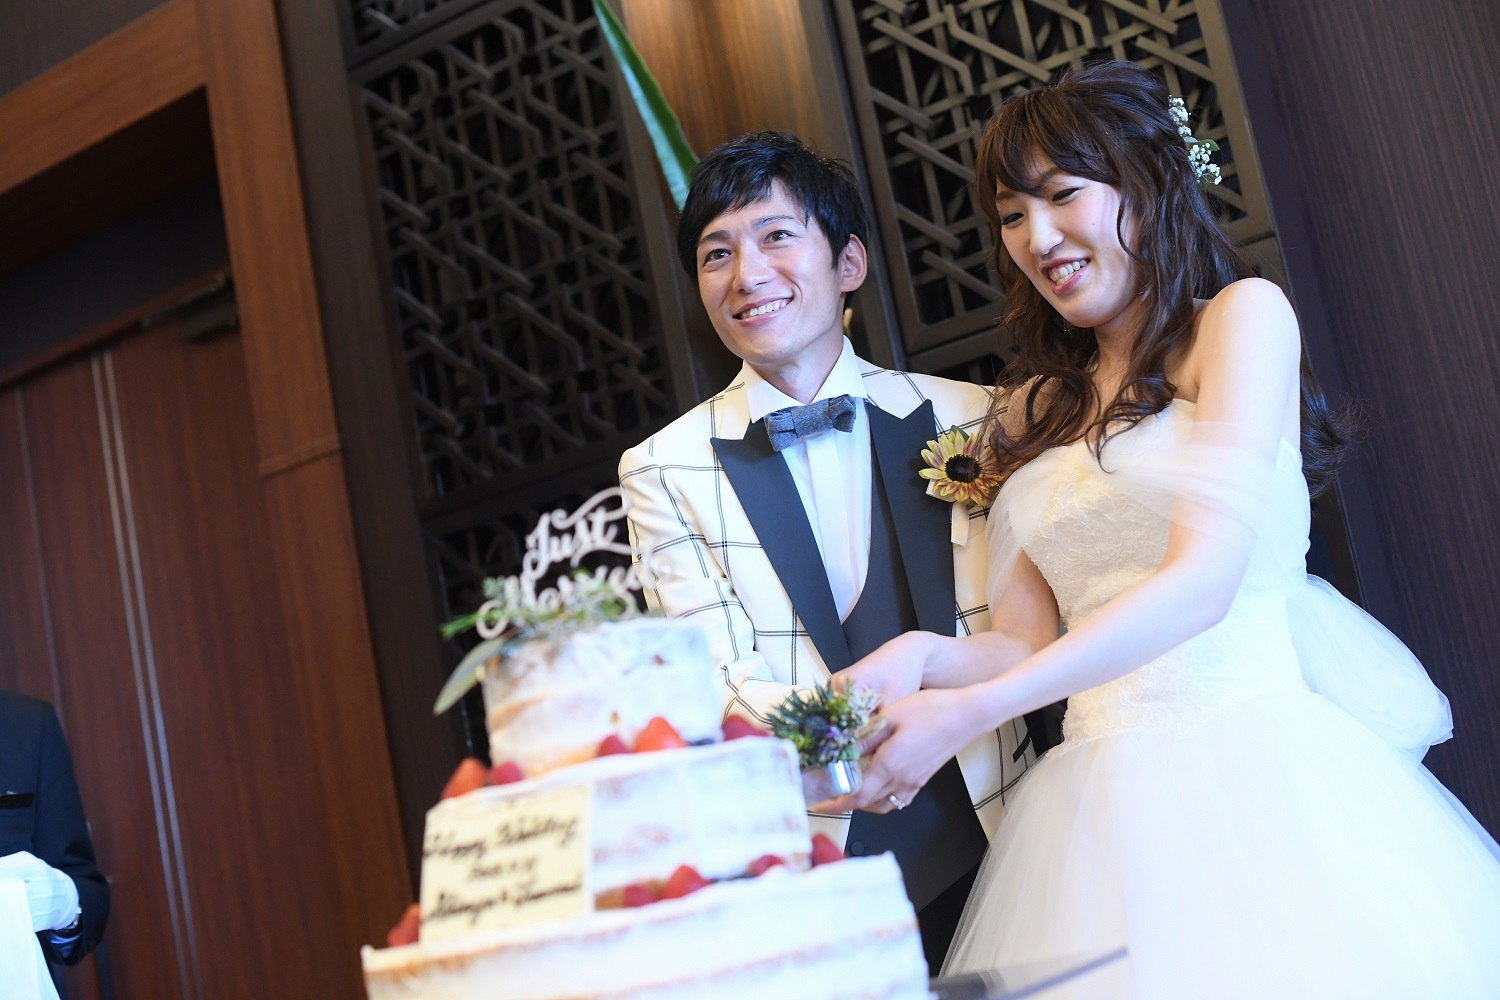 徳島市の結婚式場ブランアンジュの披露宴で新郎新婦様幸せいっぱいのウエディングケーキ入刀